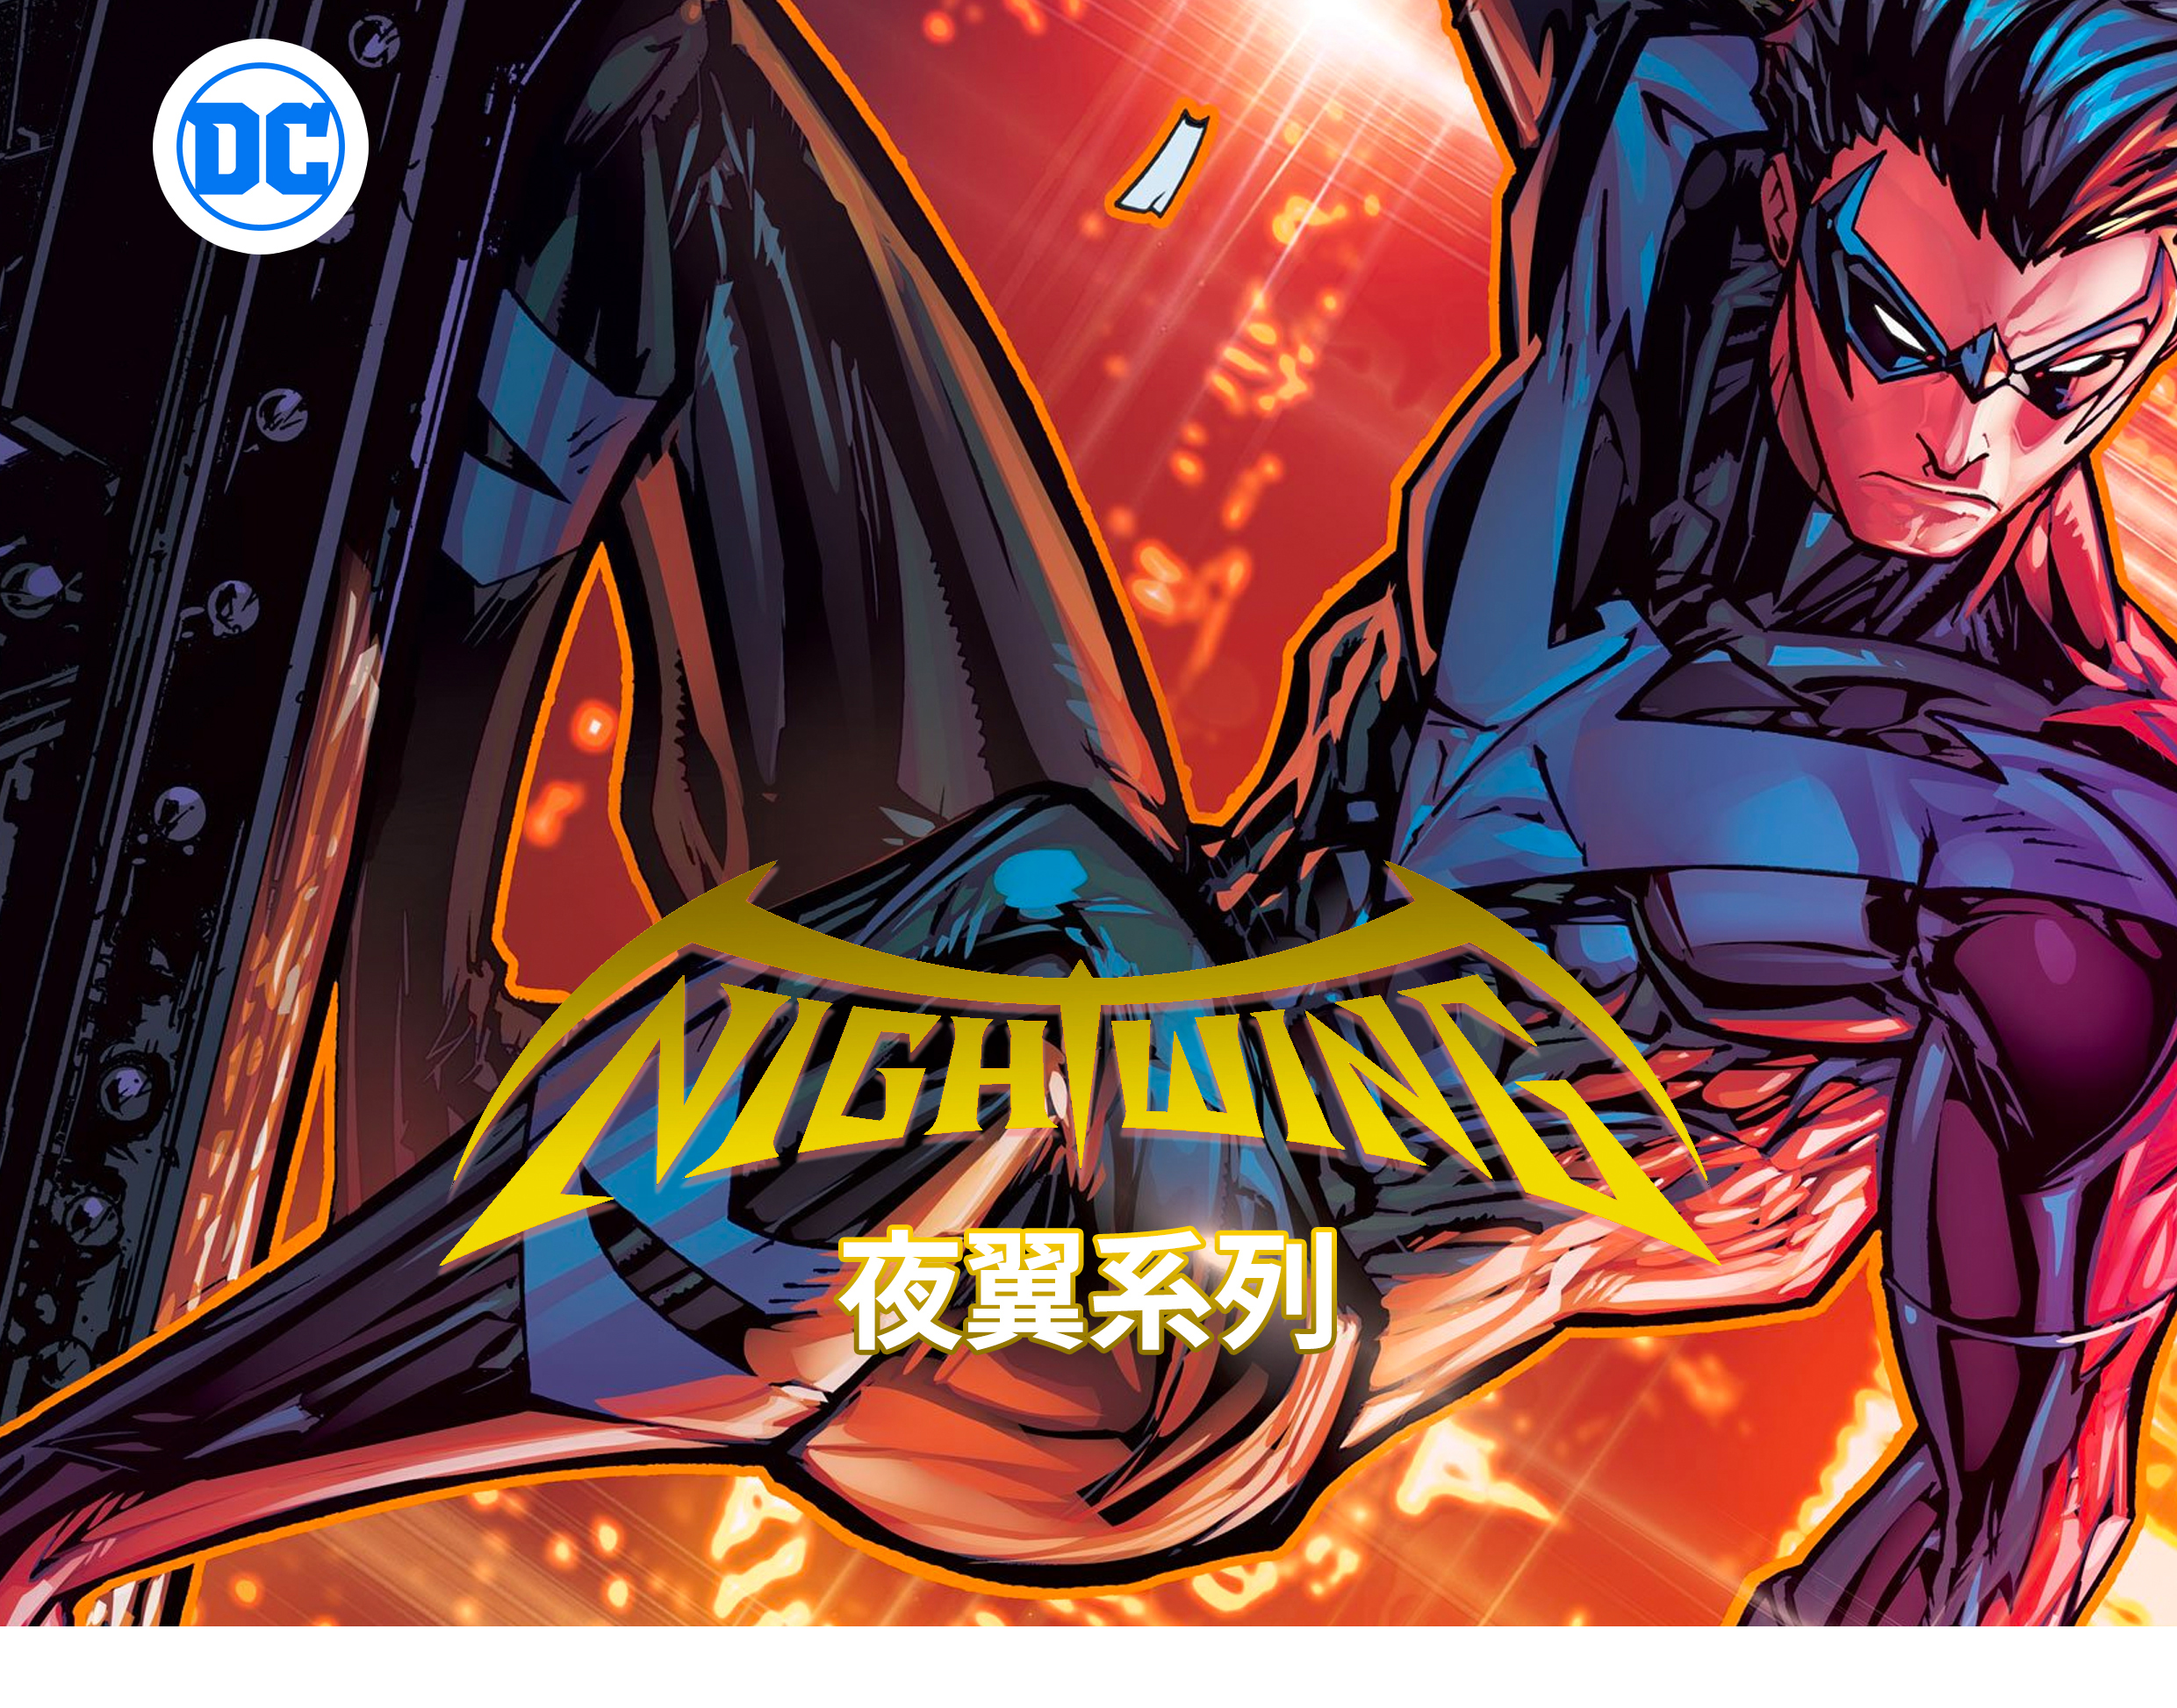 合集dc 夜翼 nightwing vol 6 英文原版